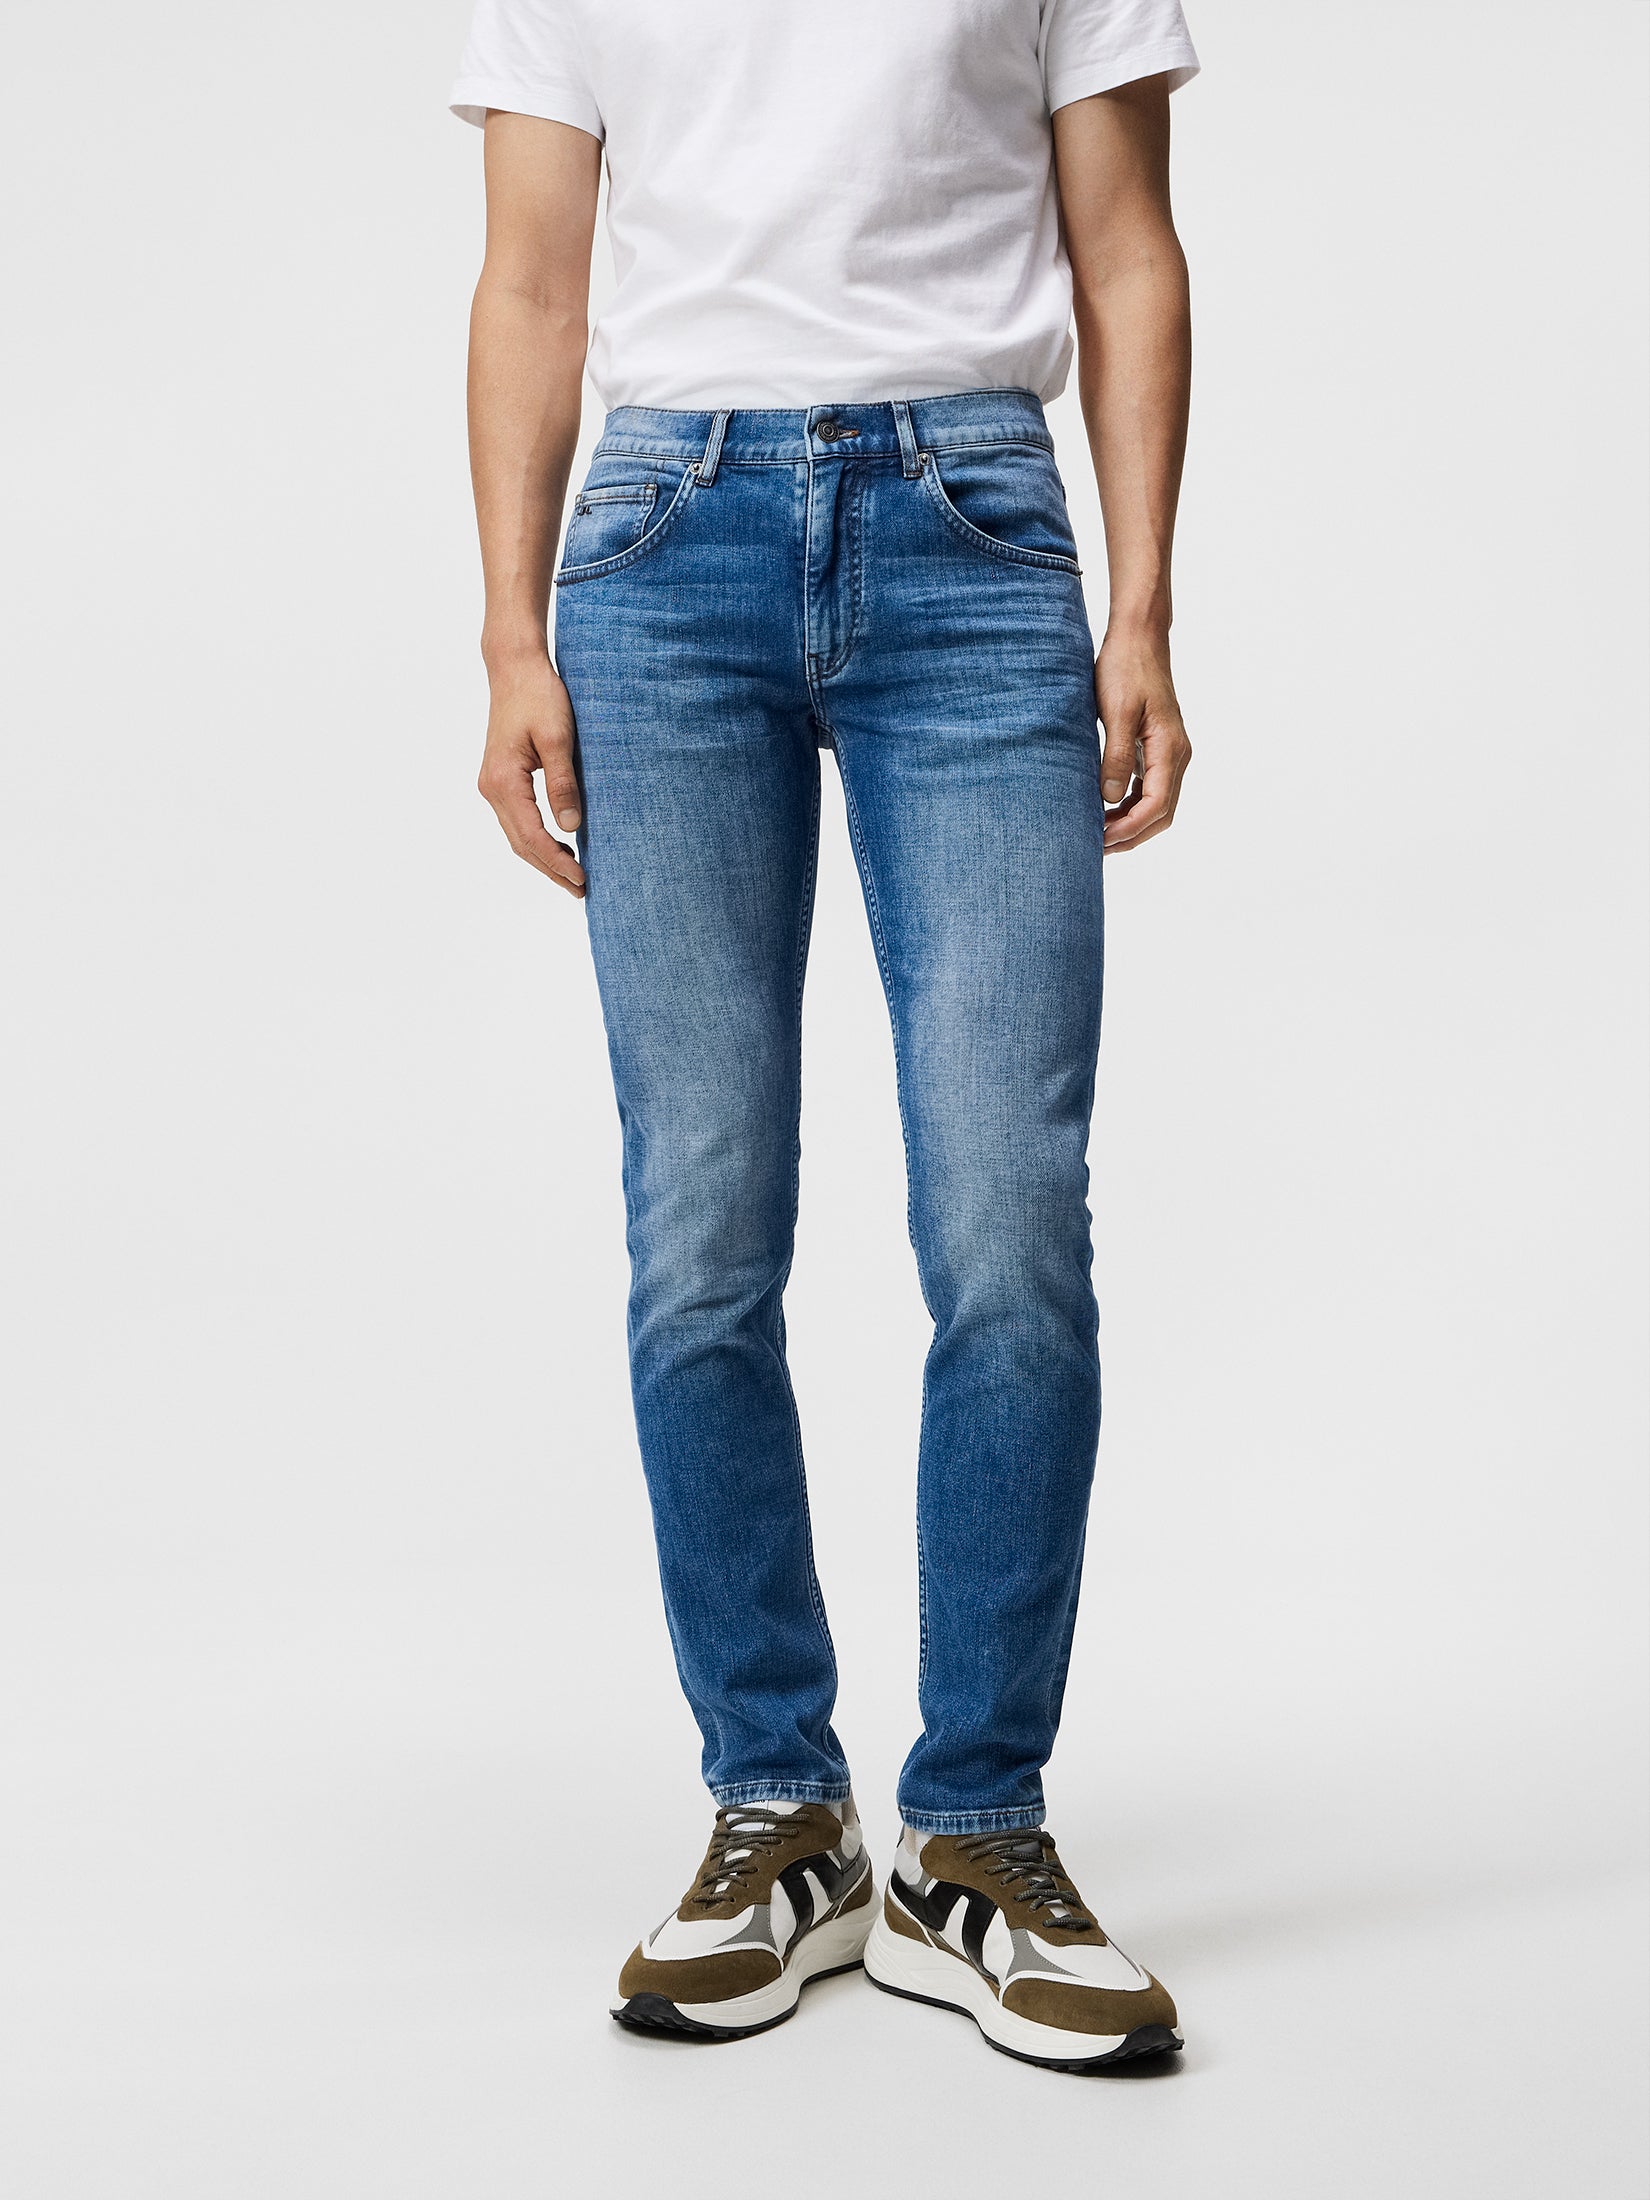 Timeless Jeans for Men - J.Lindeberg